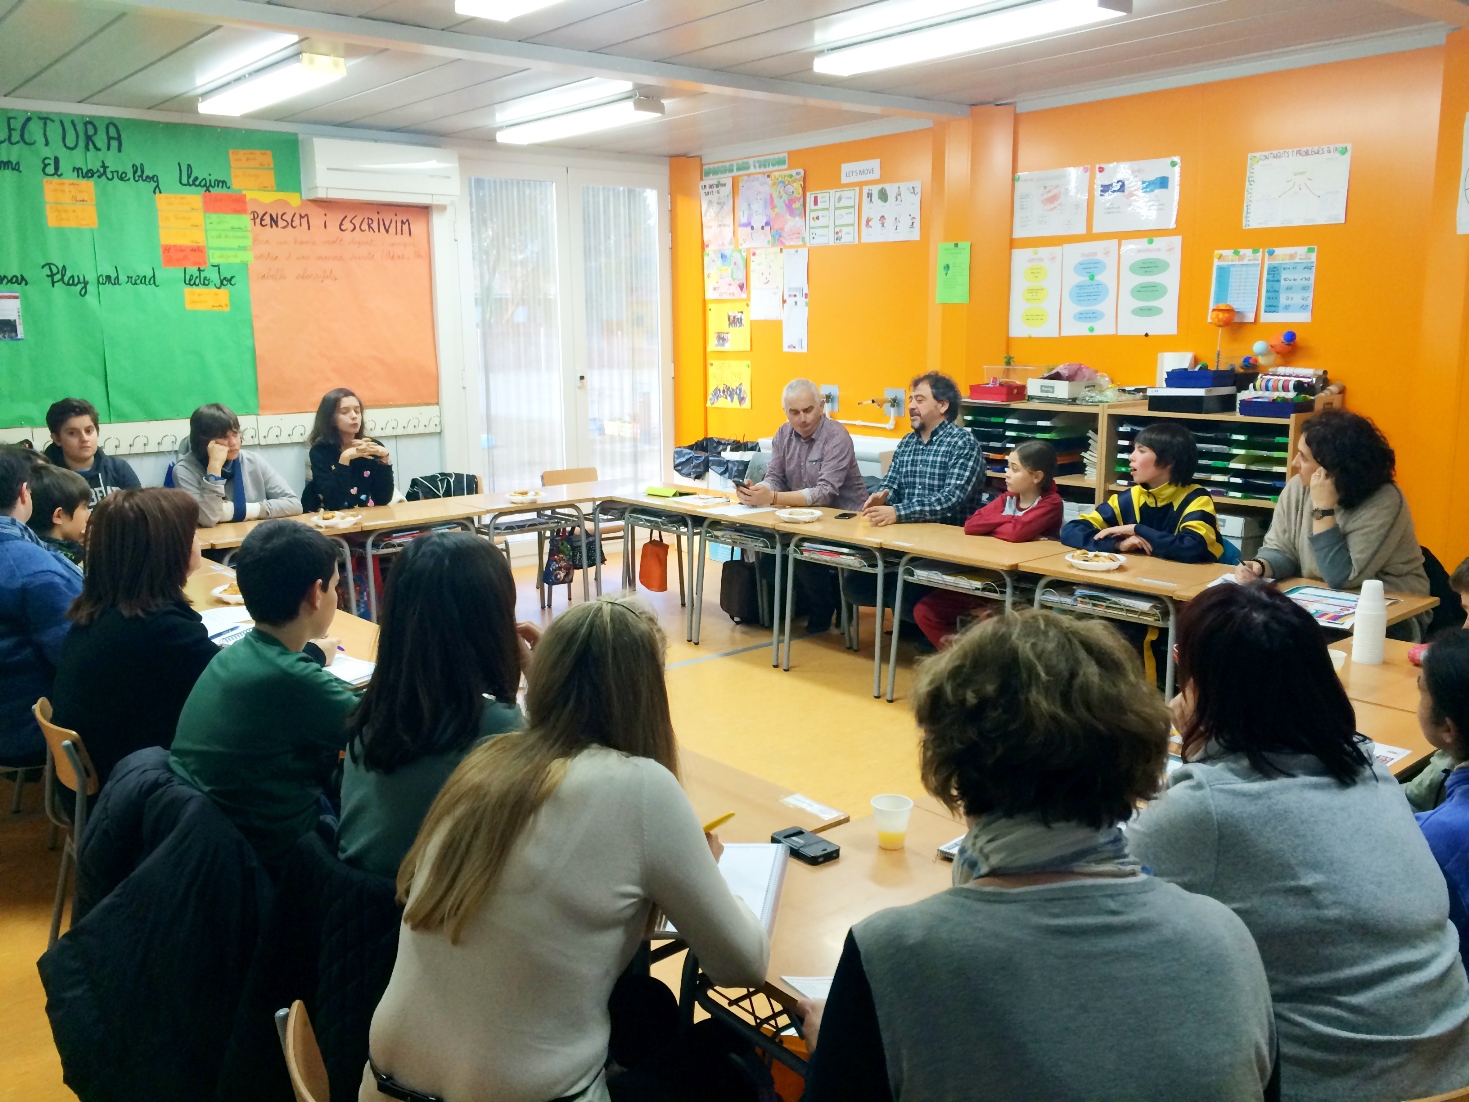 Els alumnes s’incorporen a les trobades del Consell de Lectura del projecte Mollerussa Municipi Lector